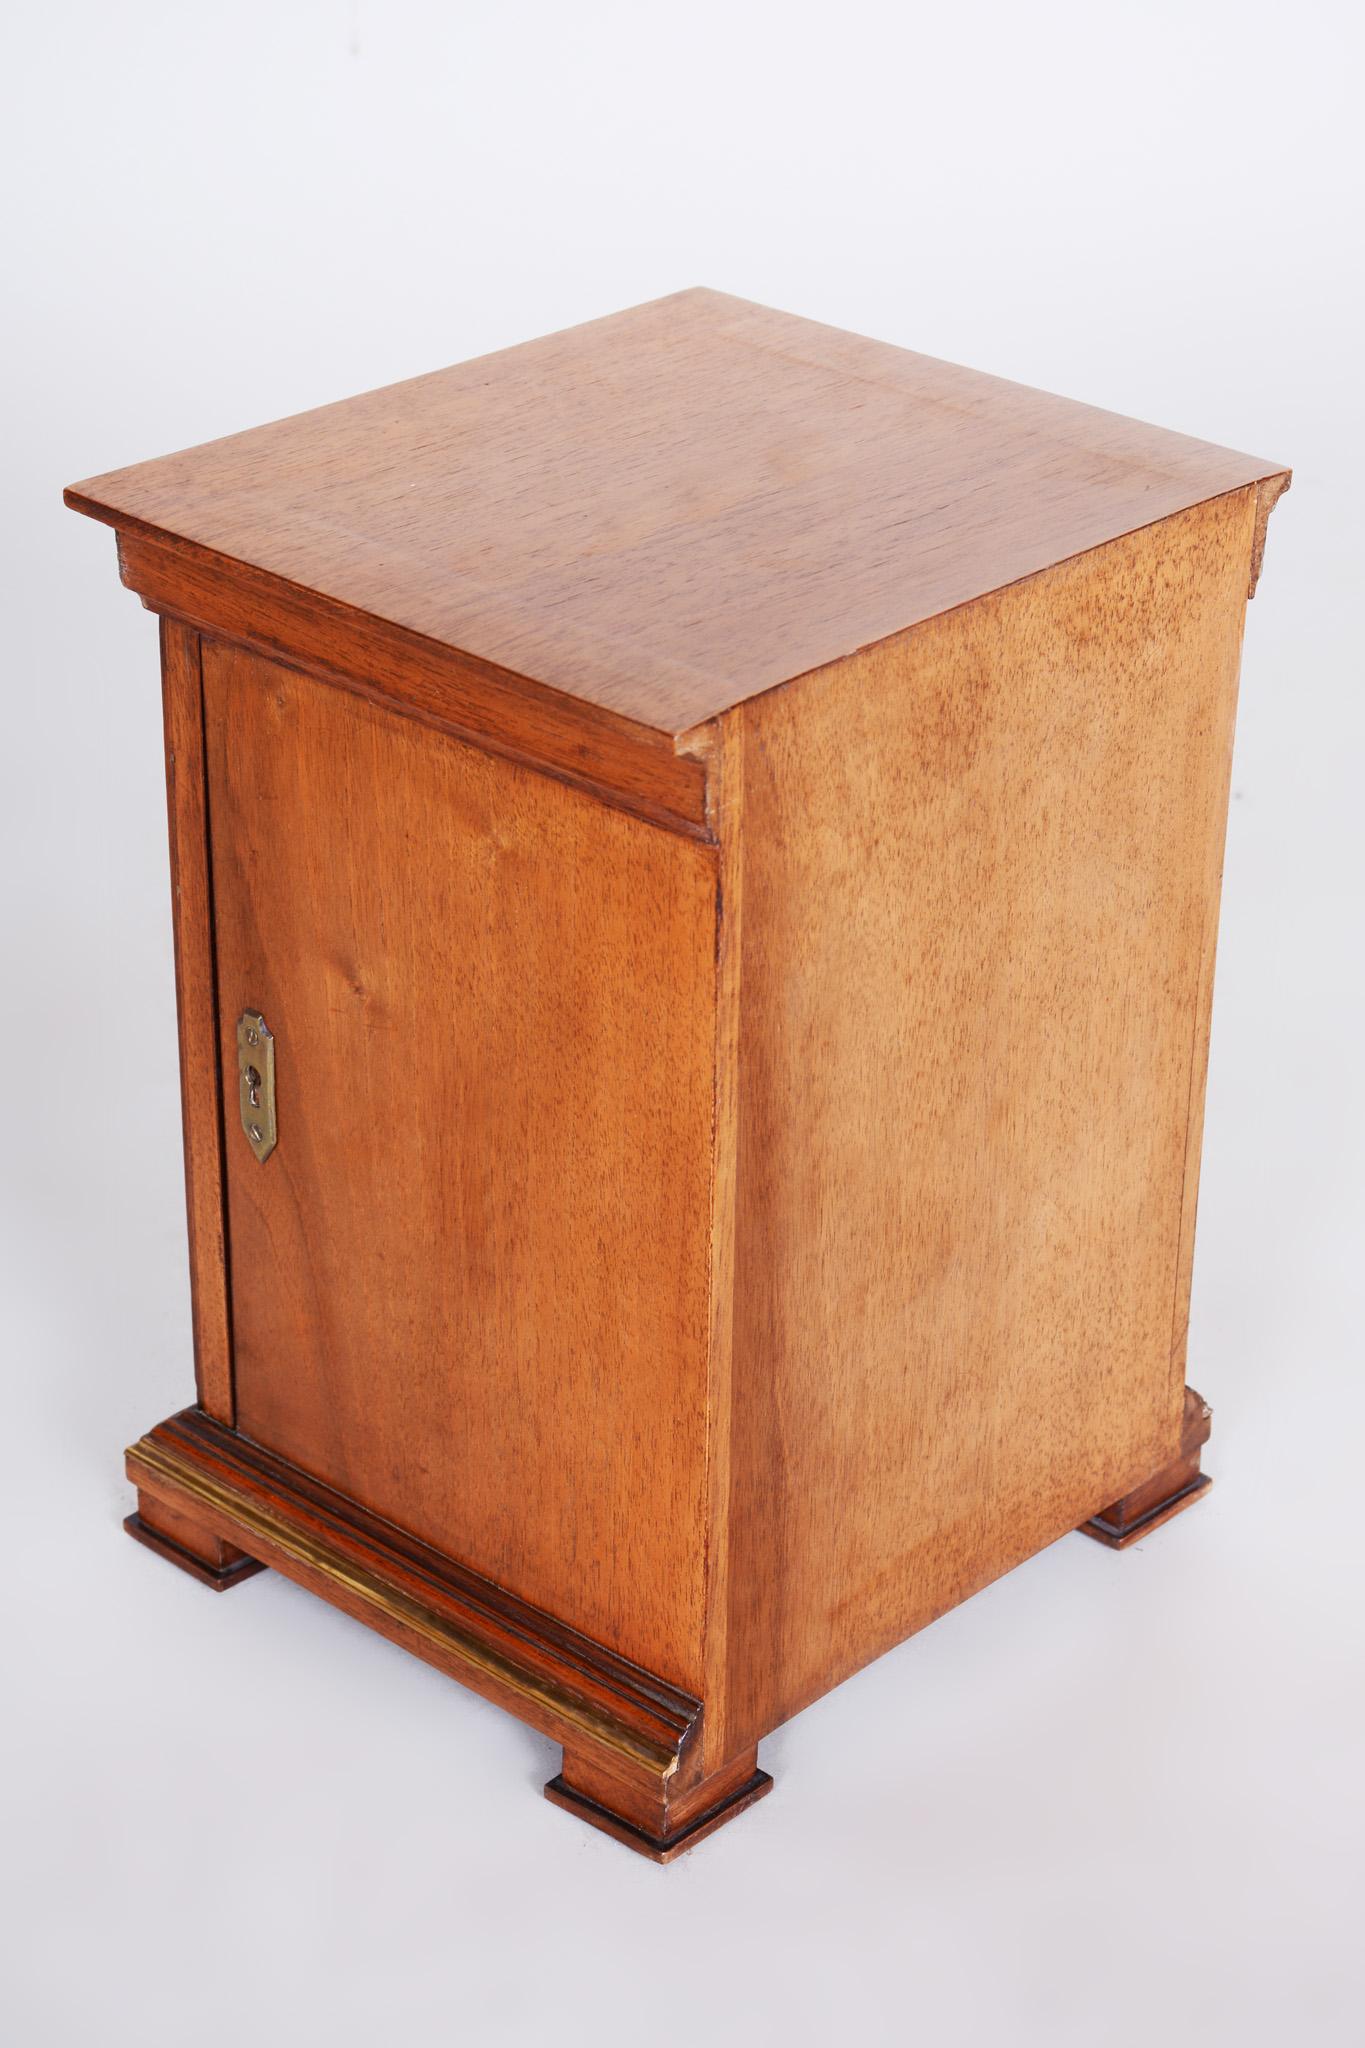 Early 20th Century Art Deco Jewelry Box, Walnut, Czechia 'Bohemia', 1920s For Sale 7